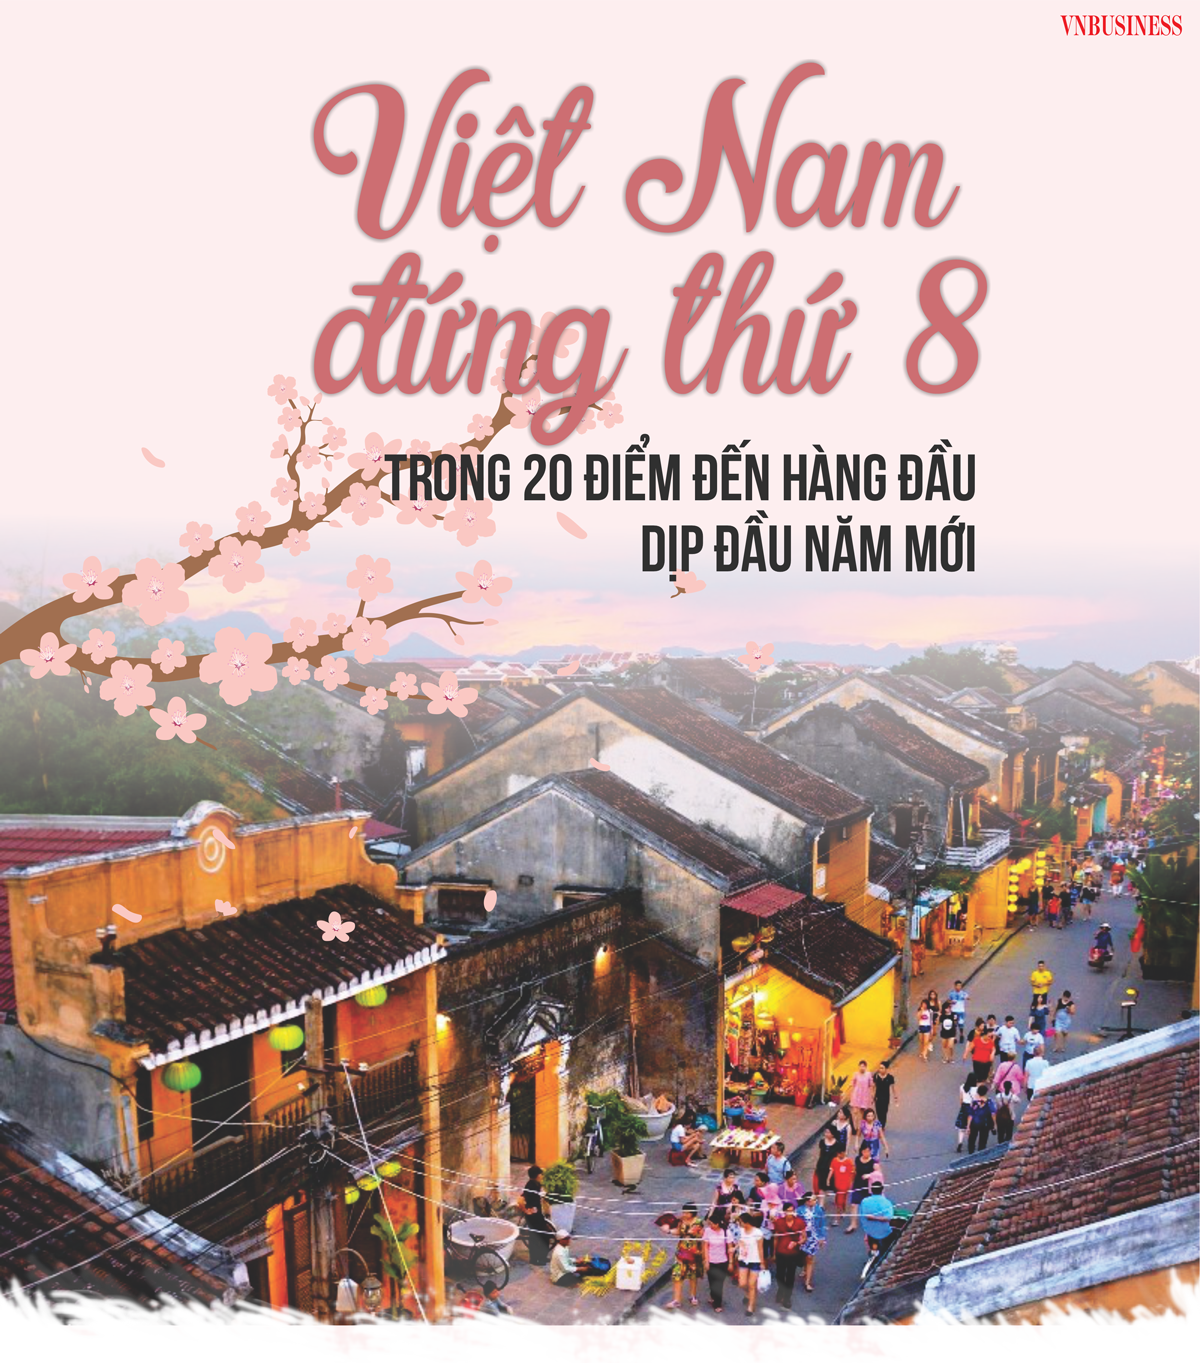 Việt Nam đứng thứ 8 trong 20 điểm đến hàng đầu dịp đầu năm mới 2023 - Ảnh 1.